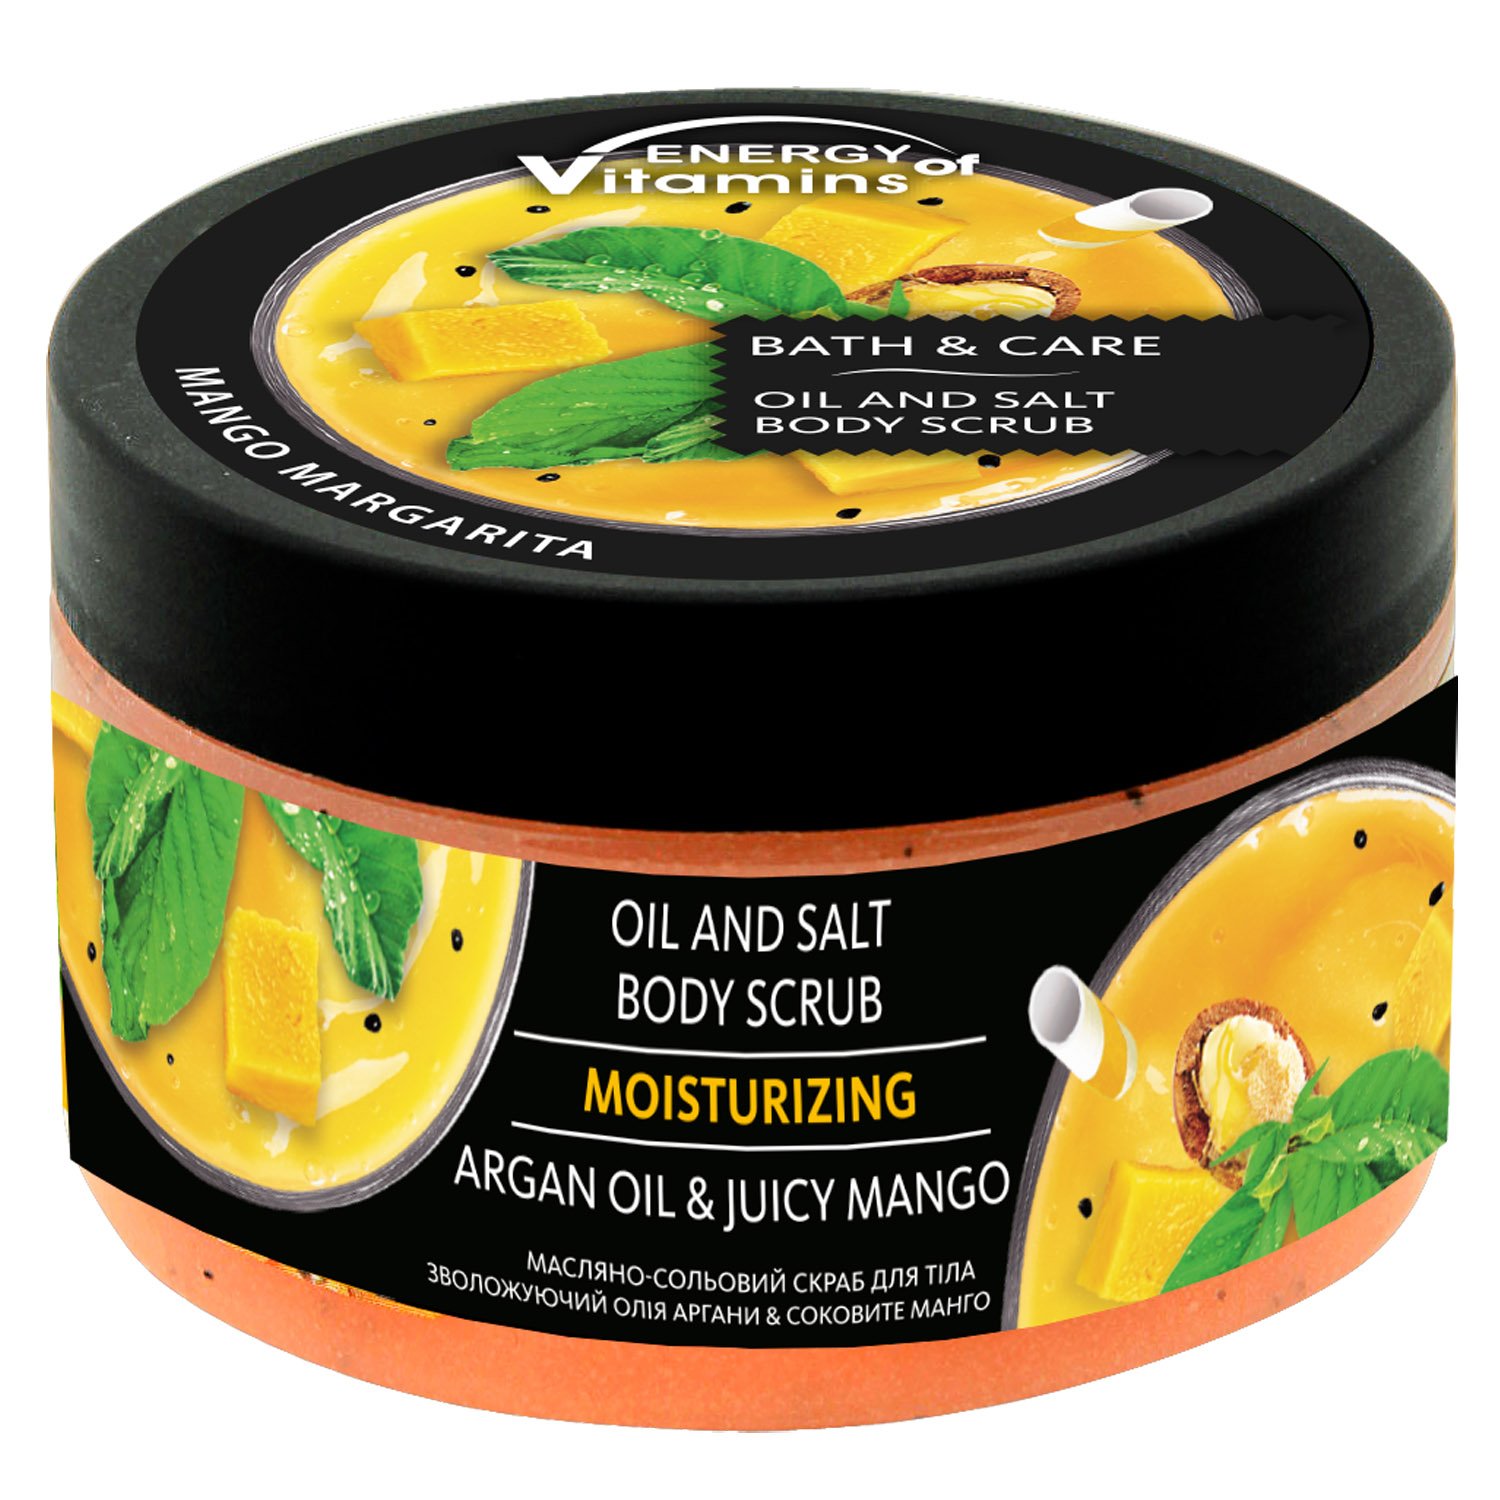 Скраб для тіла Energy of Vitamins Олія аргани та соковите манго масляно-сольовий зволожуючий, 250 мл - фото 1